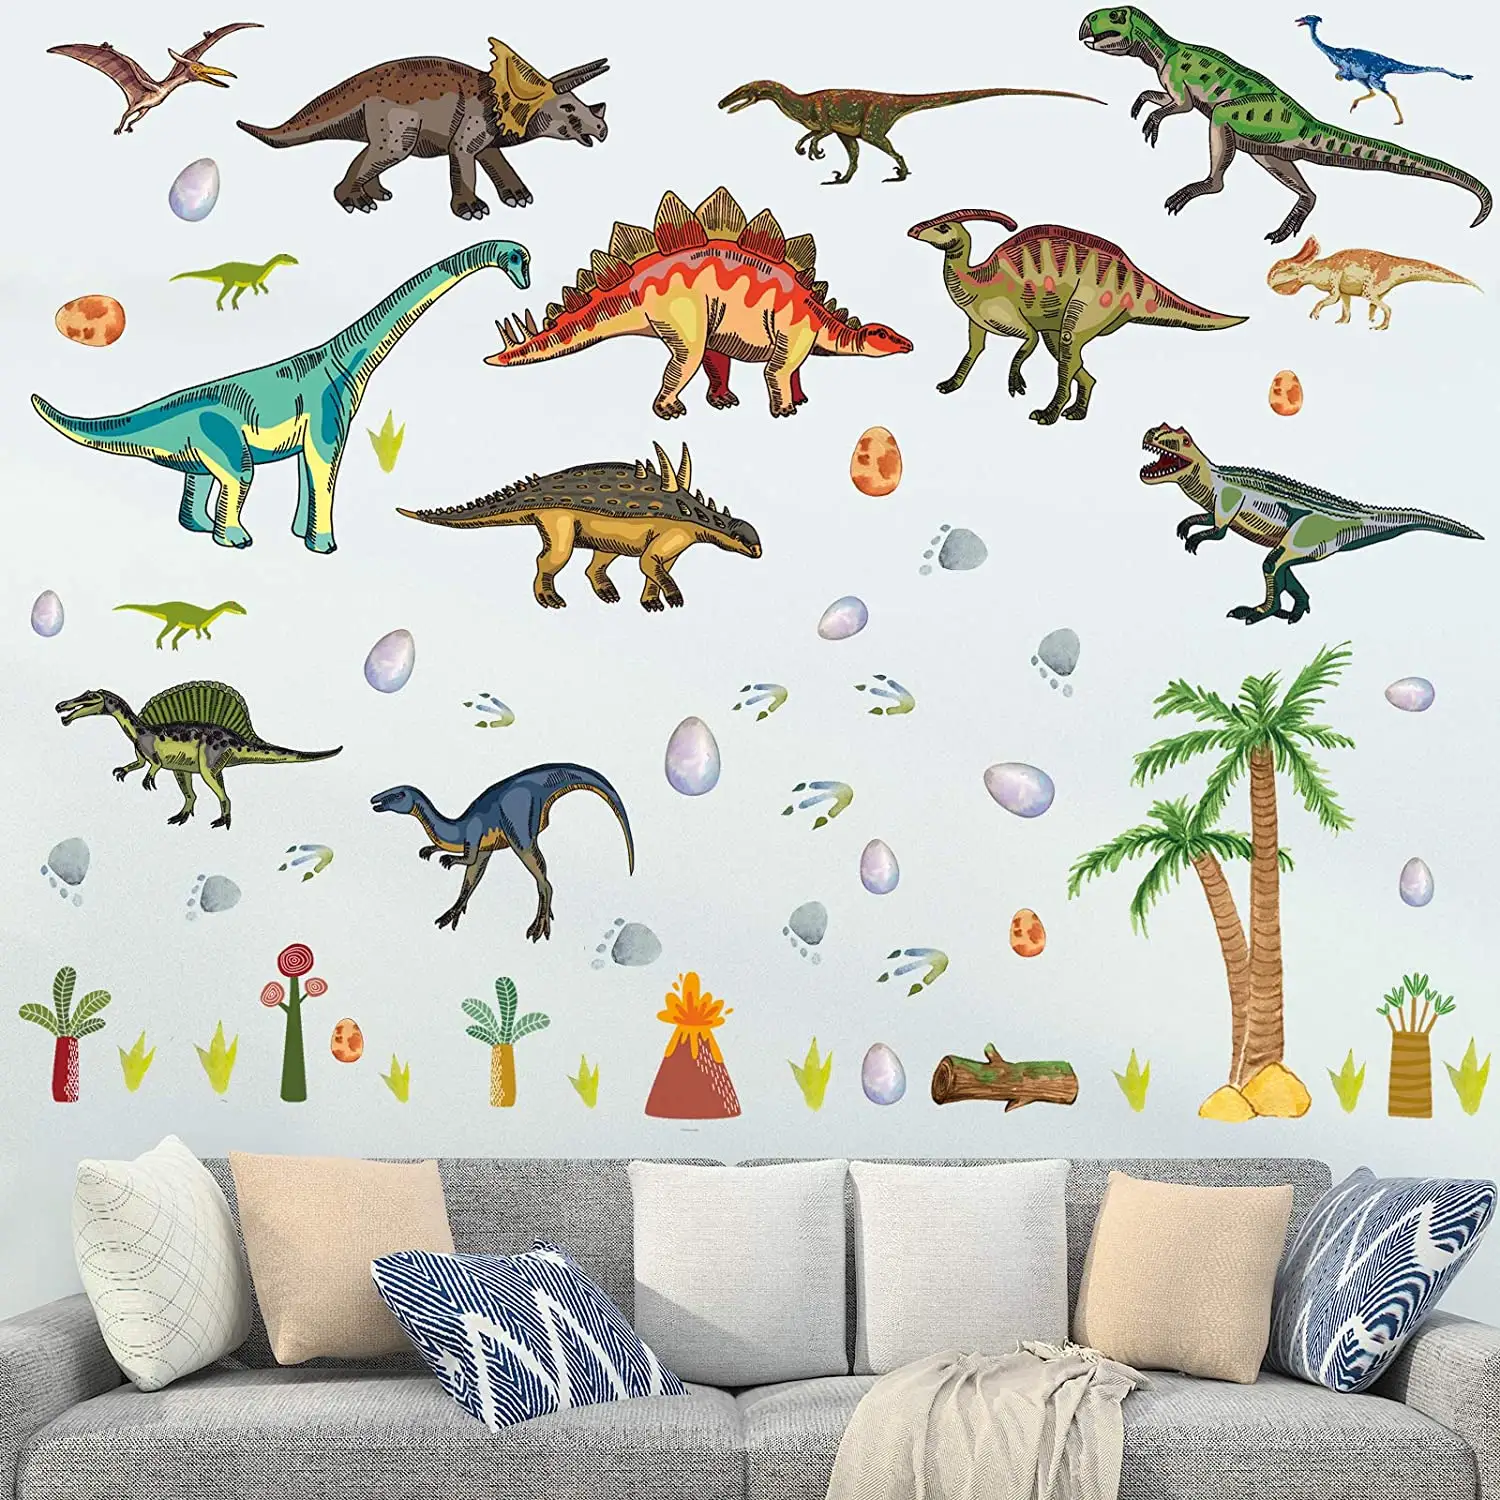 Decalcomanie da parete di dinosauro per la stanza dei ragazzi adesivi murali di dinosauri ad acquerello per la camera da letto dei bambini grandi decorazioni murali Dino per la scuola materna